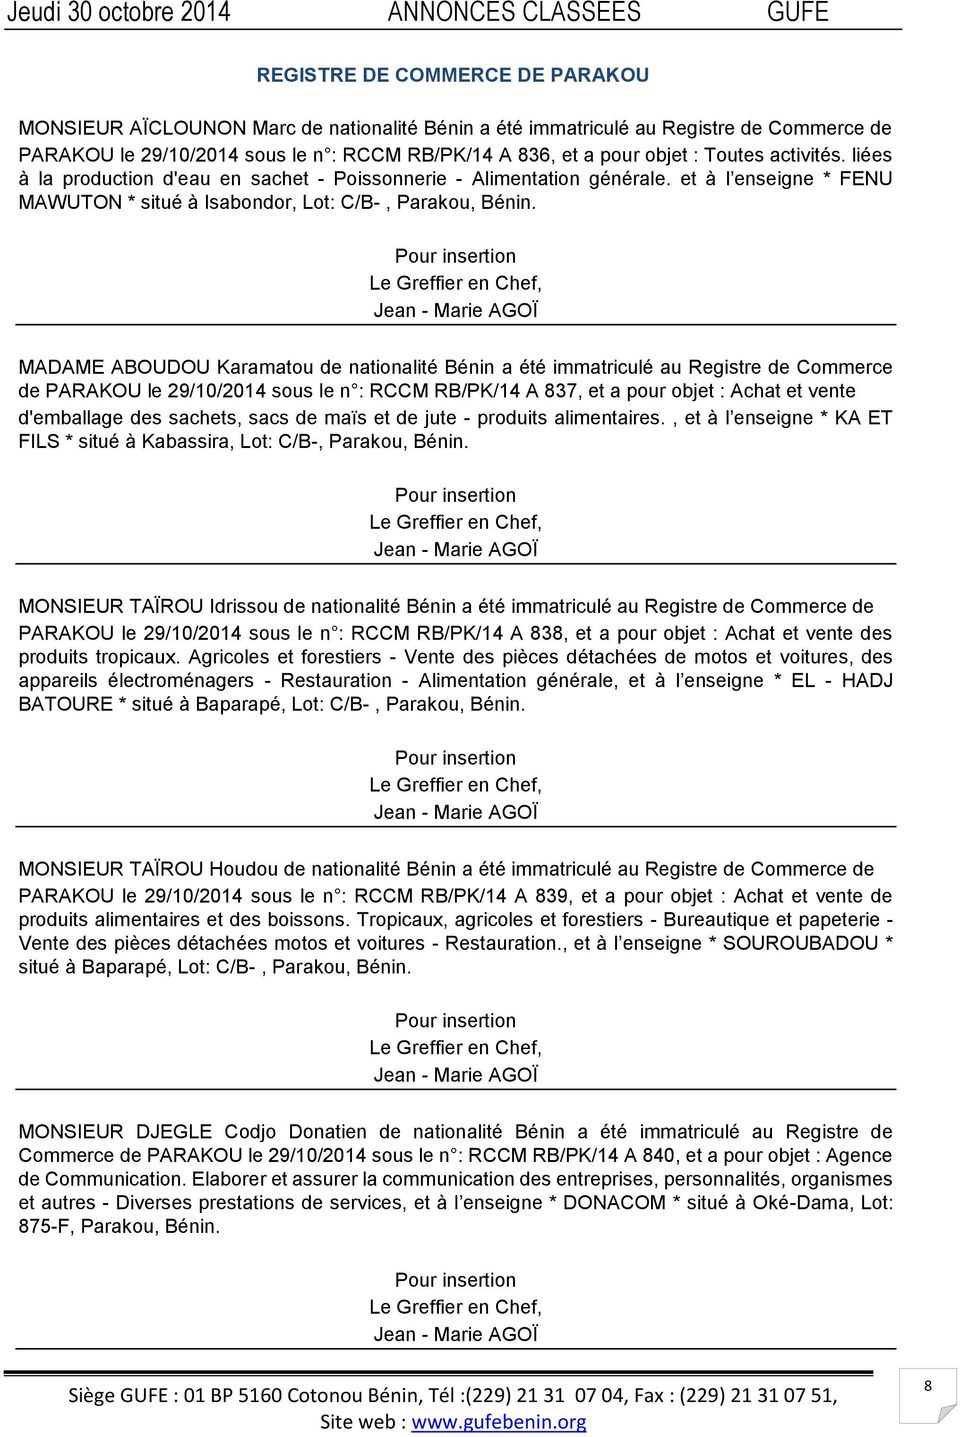 Le Greffier en Chef, Jean - Marie AGOÏ MADAME ABOUDOU Karamatou de nationalité Bénin a été immatriculé au Registre de Commerce de PARAKOU le 29/10/2014 sous le n : RCCM RB/PK/14 A 837, et a pour